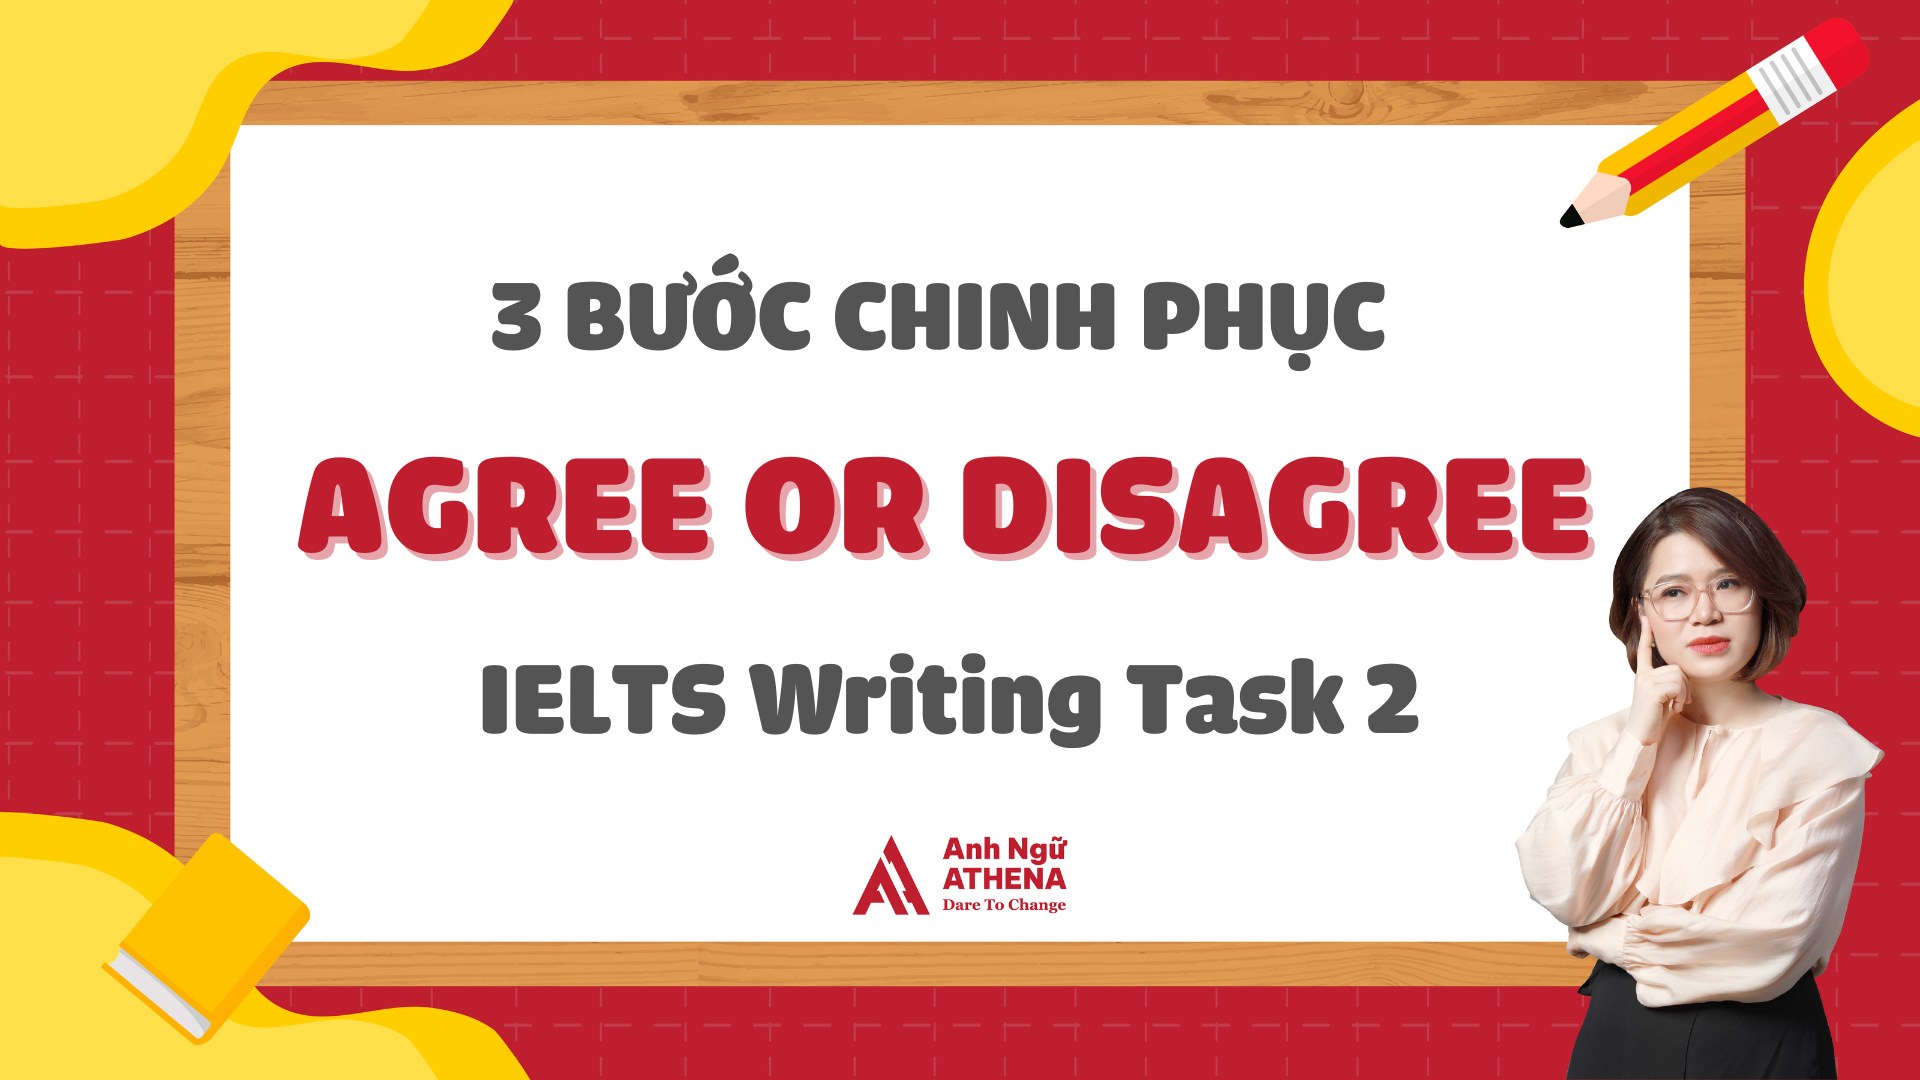 3 bước cùng Athena chinh phục IELTS Writing Task 2 dạng Agree or Disagree